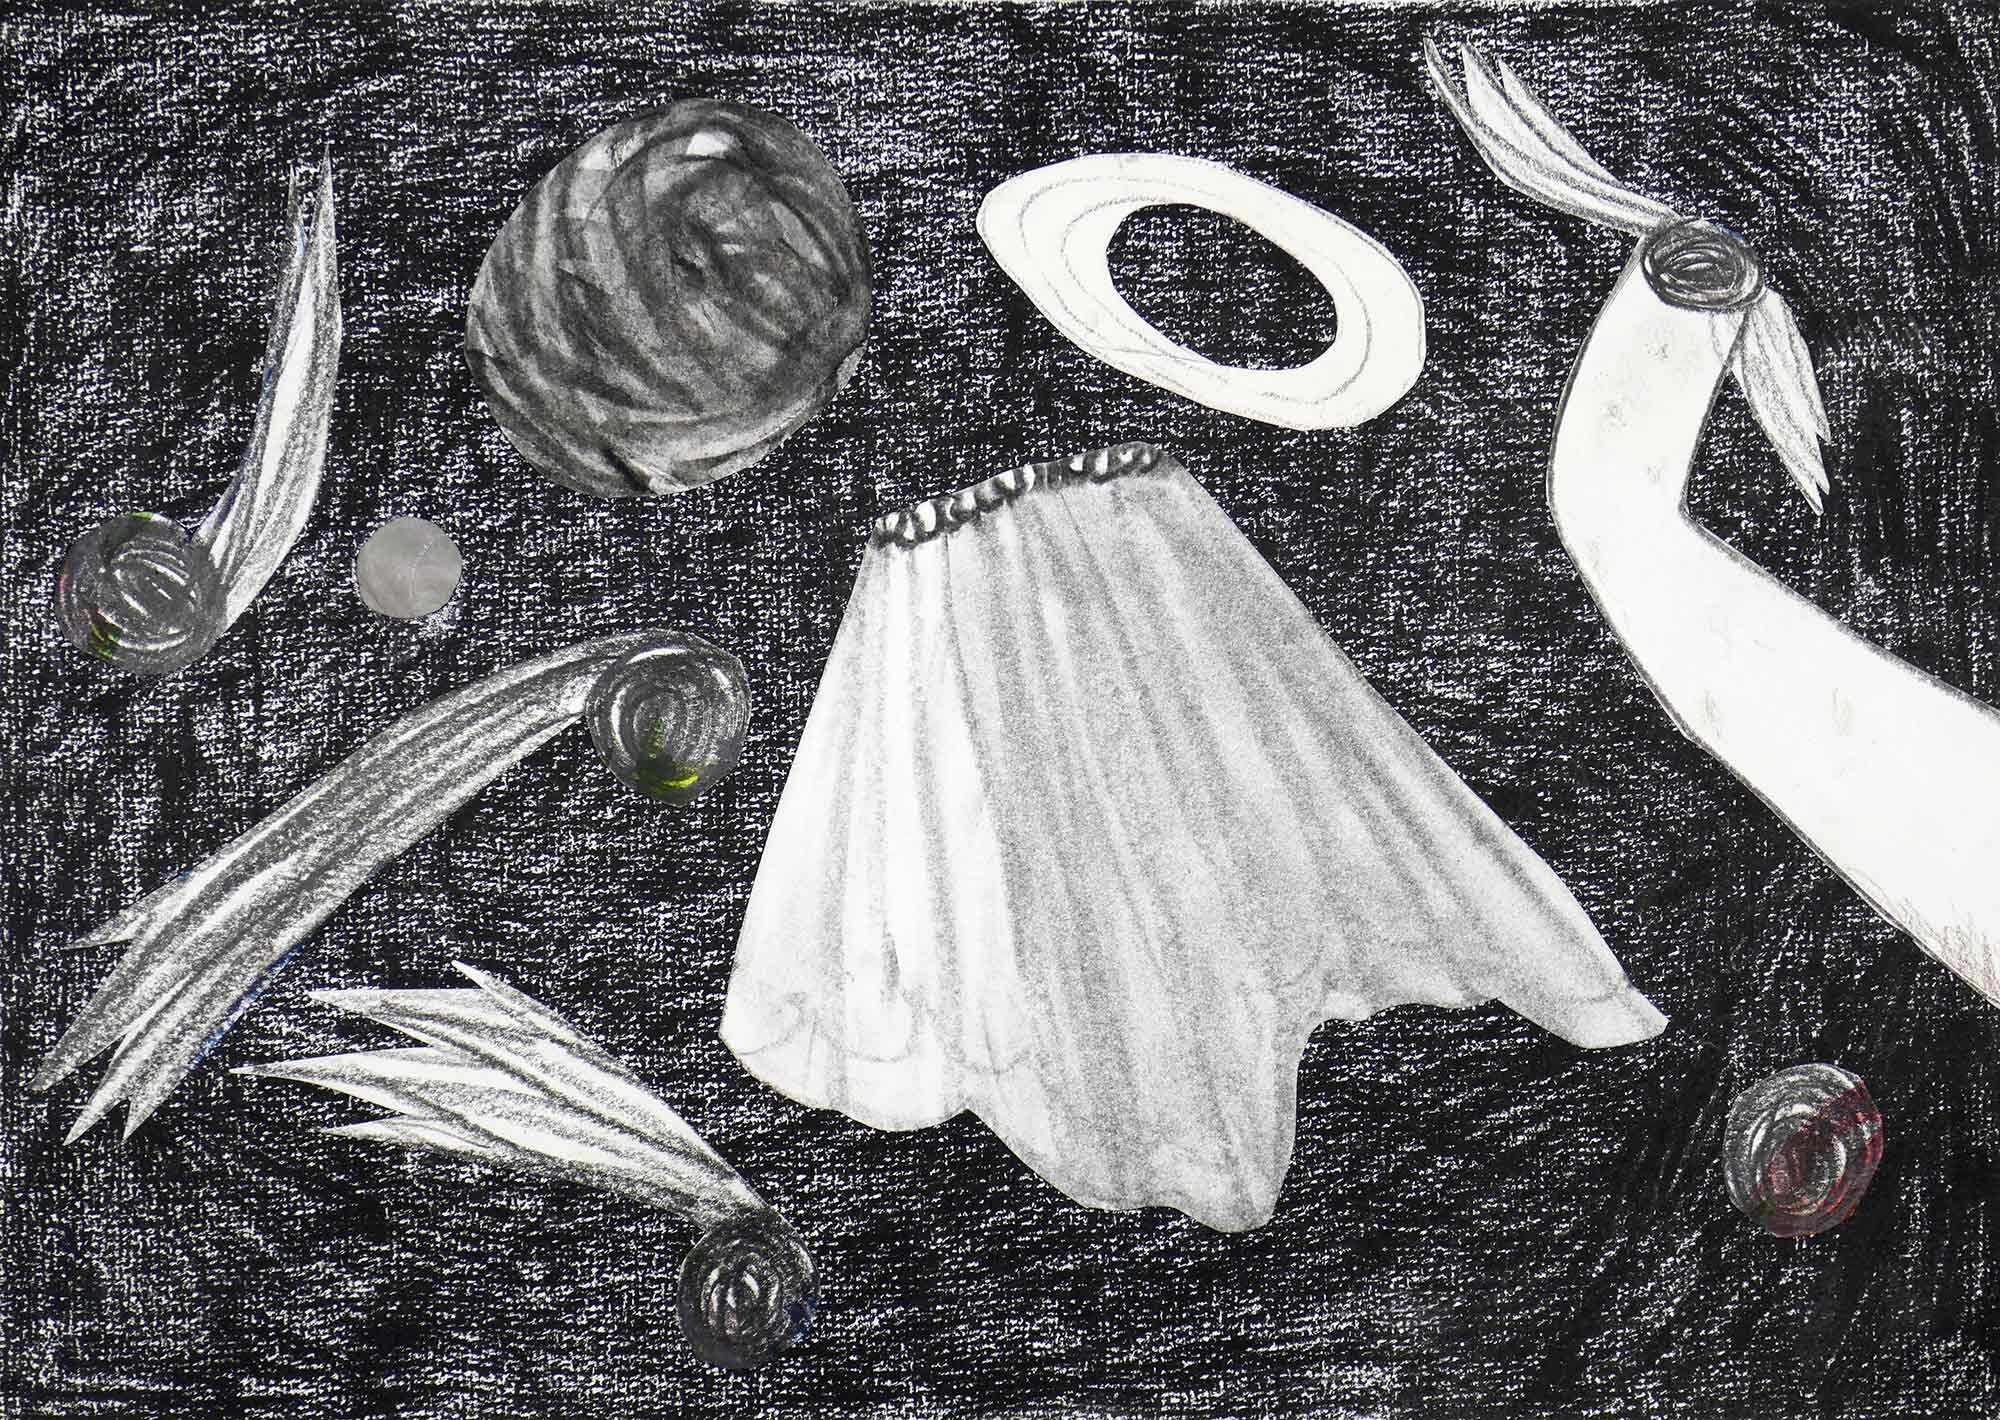   Het rokje  ( The skirt ) collage: potlood, houtskool 24 x 32 cm, 2020 